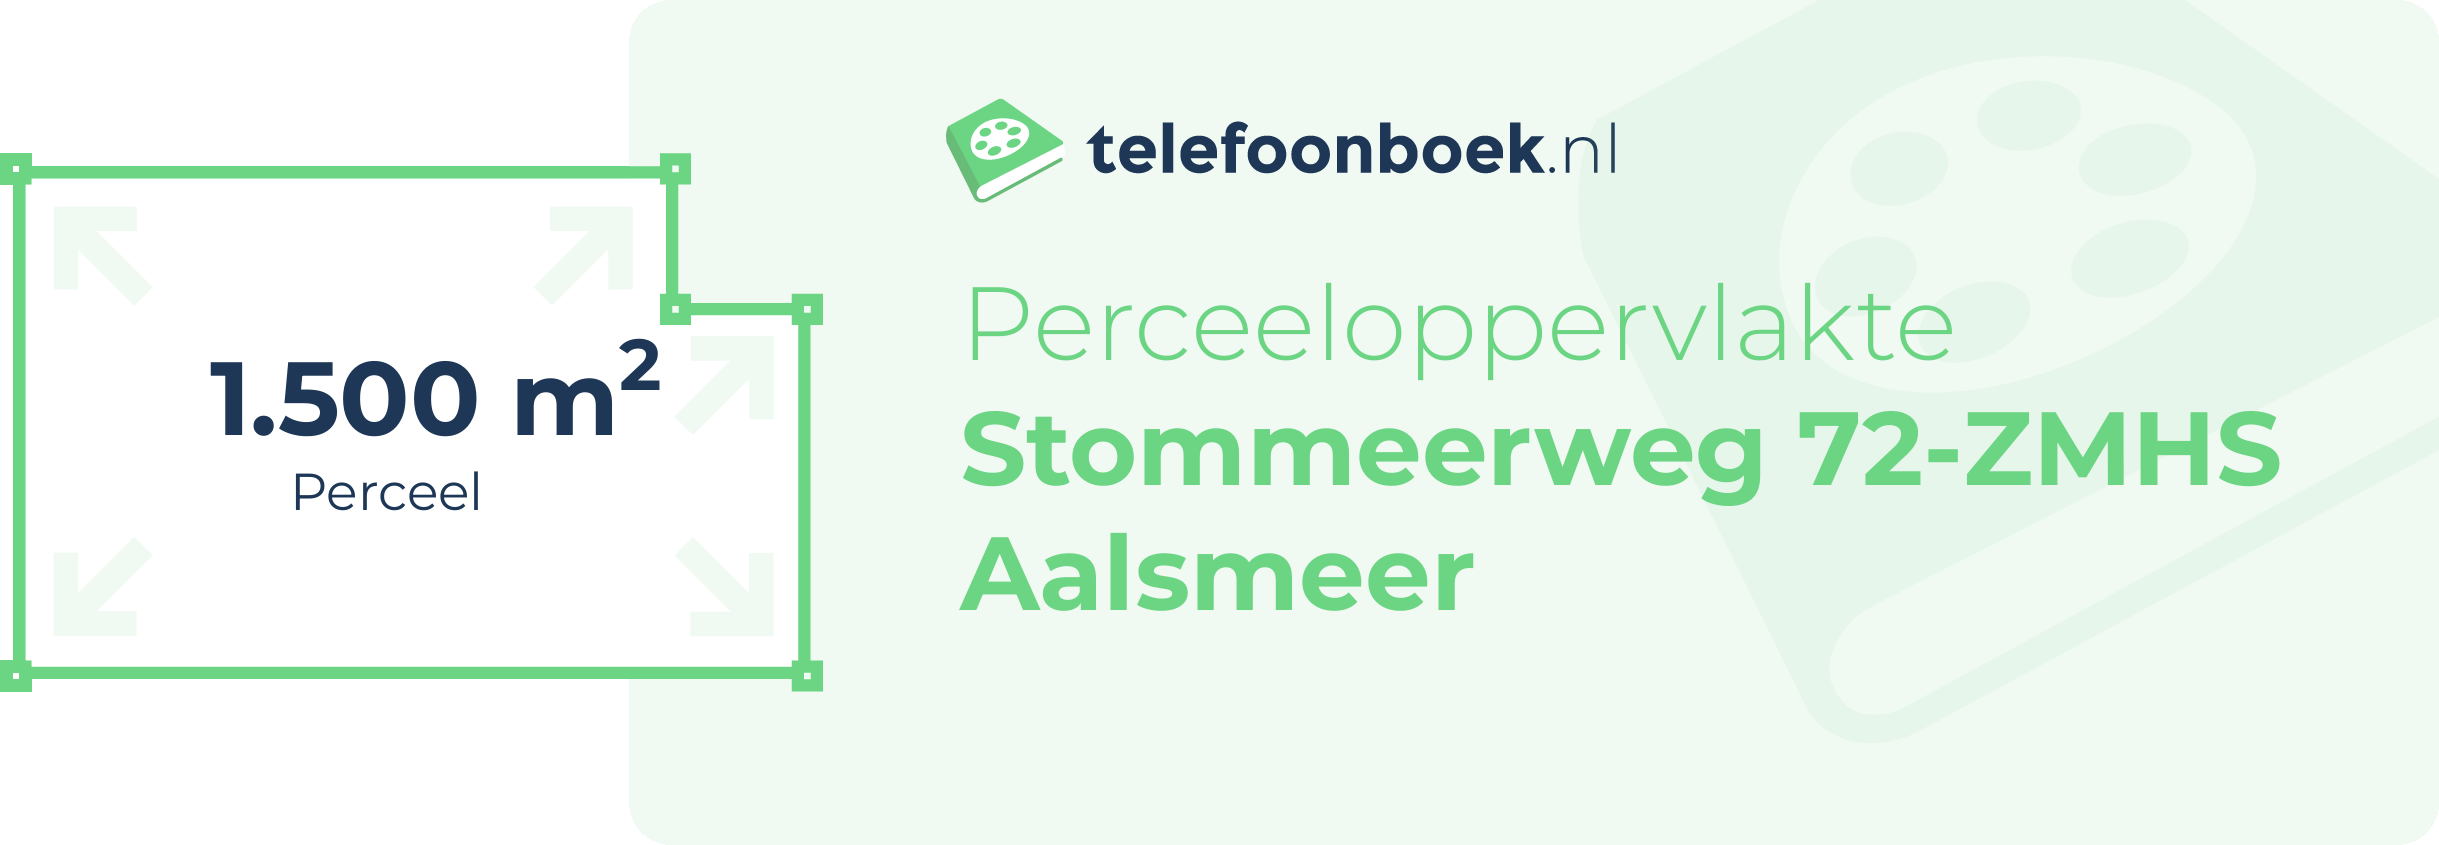 Perceeloppervlakte Stommeerweg 72-ZMHS Aalsmeer